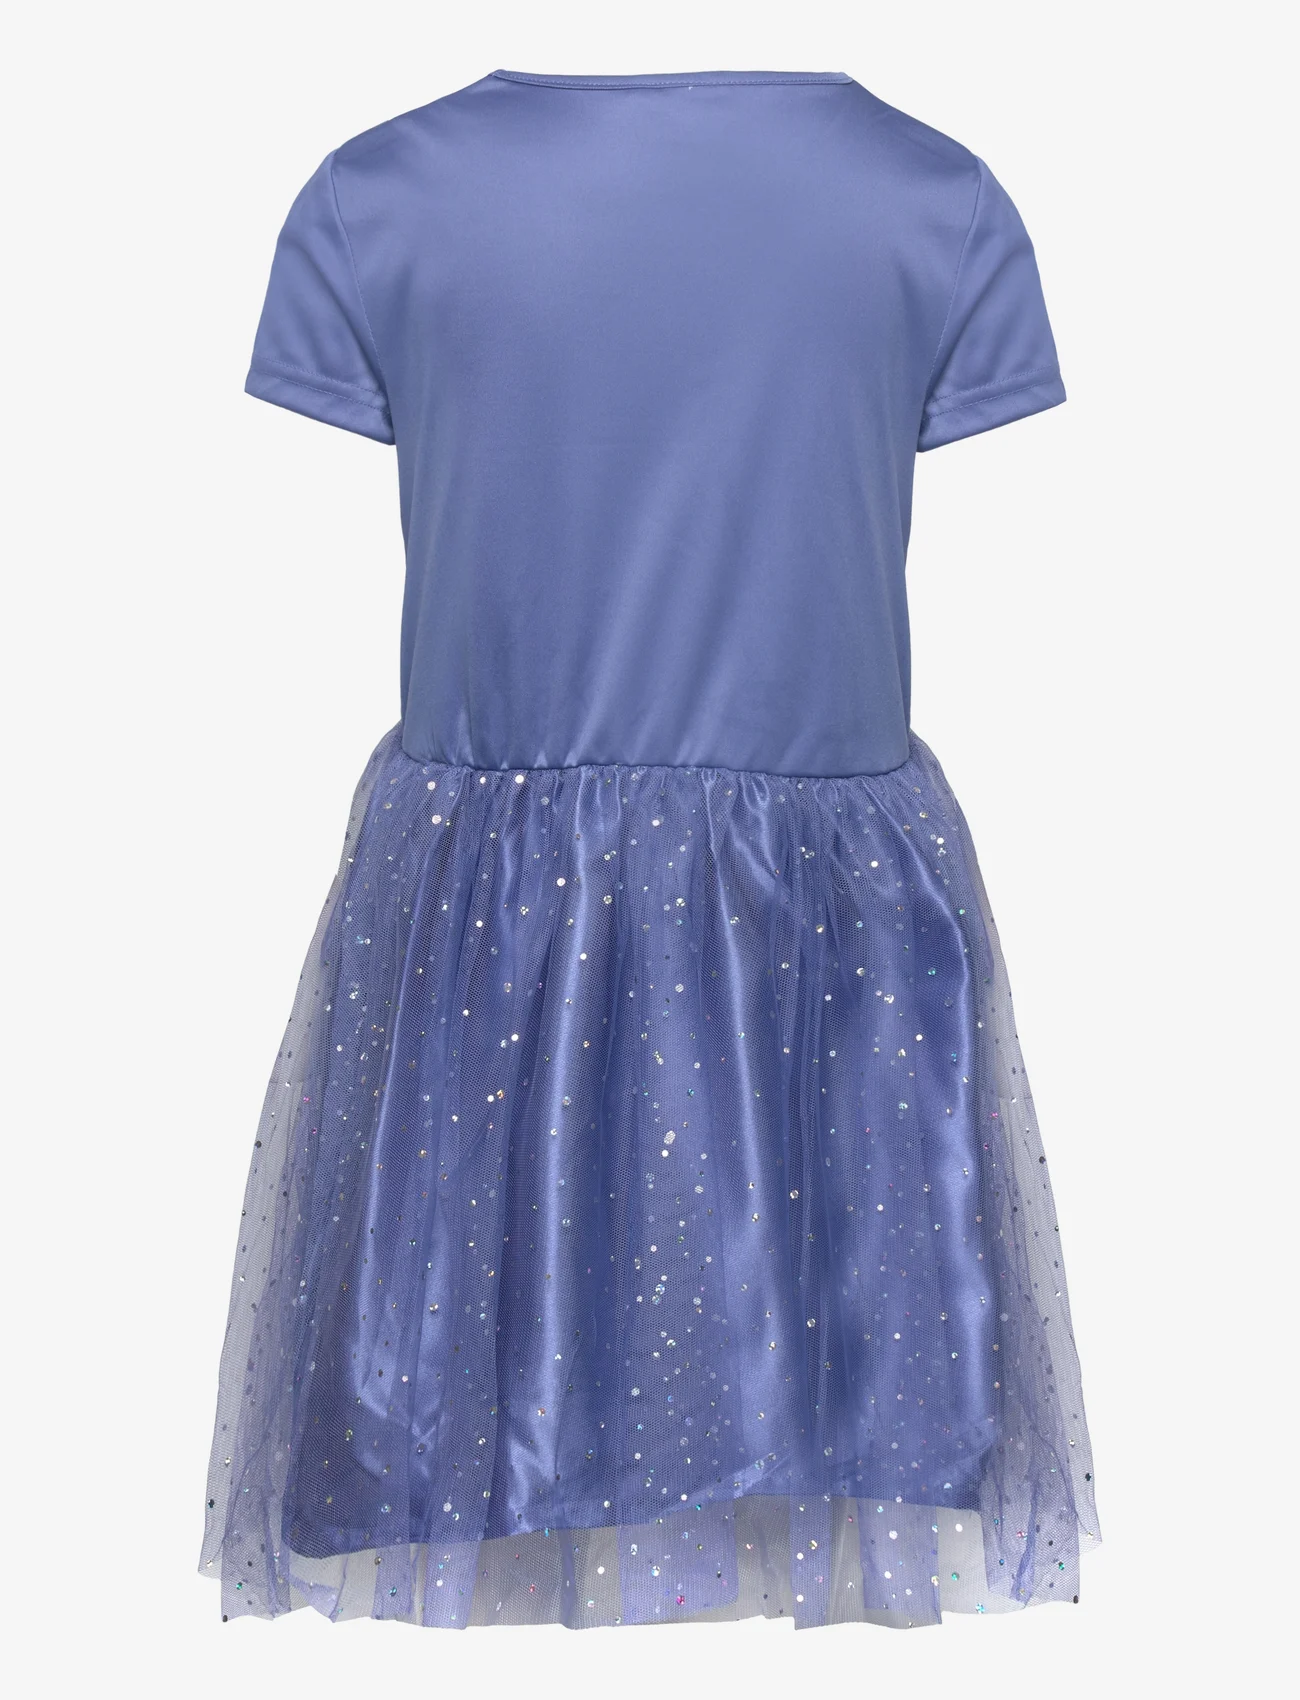 Disney - Dress - kurzärmelige freizeitkleider - dark blue - 1